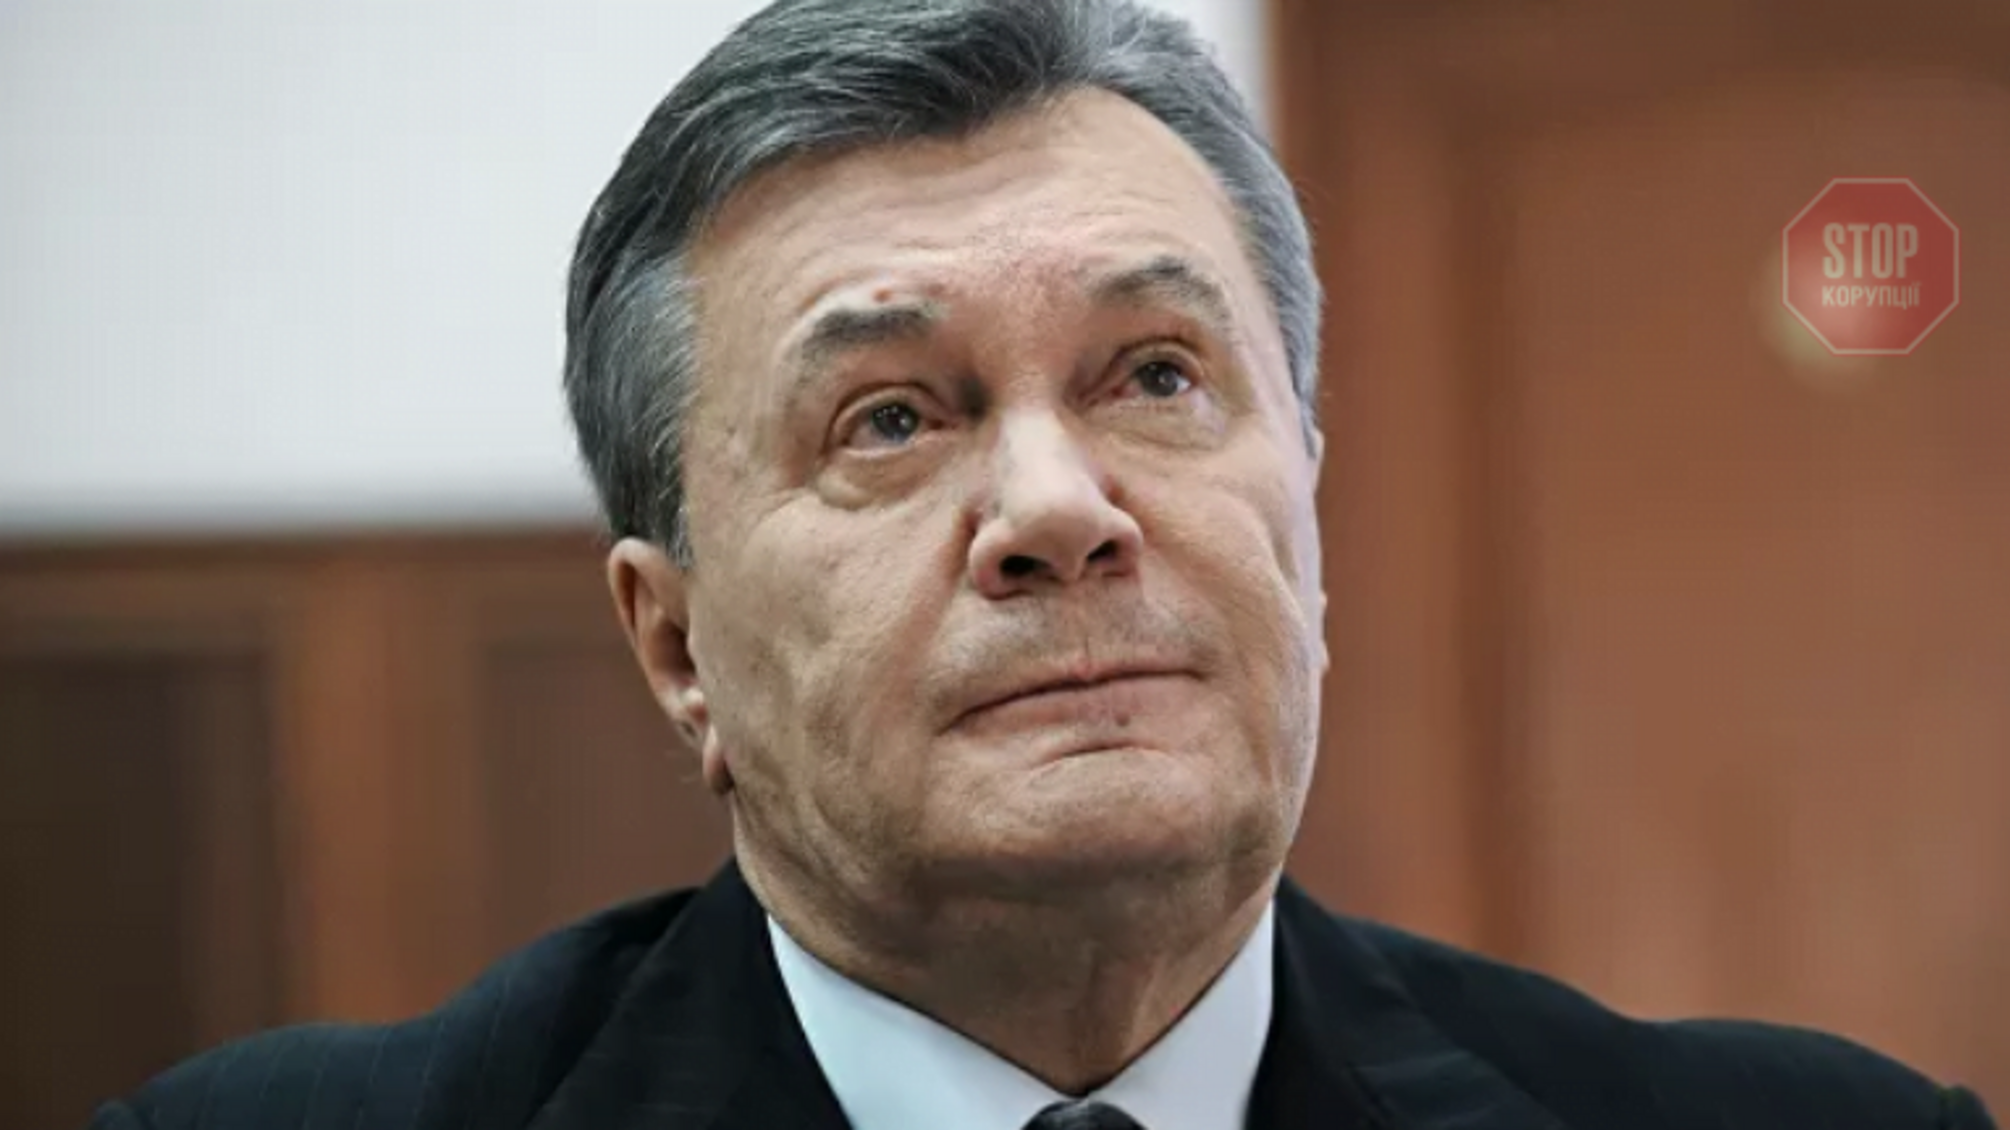 Янукович бажає 'з’явитися' в суді через відеозв’язок: ВСУ зареєстрував заяву експрезидента